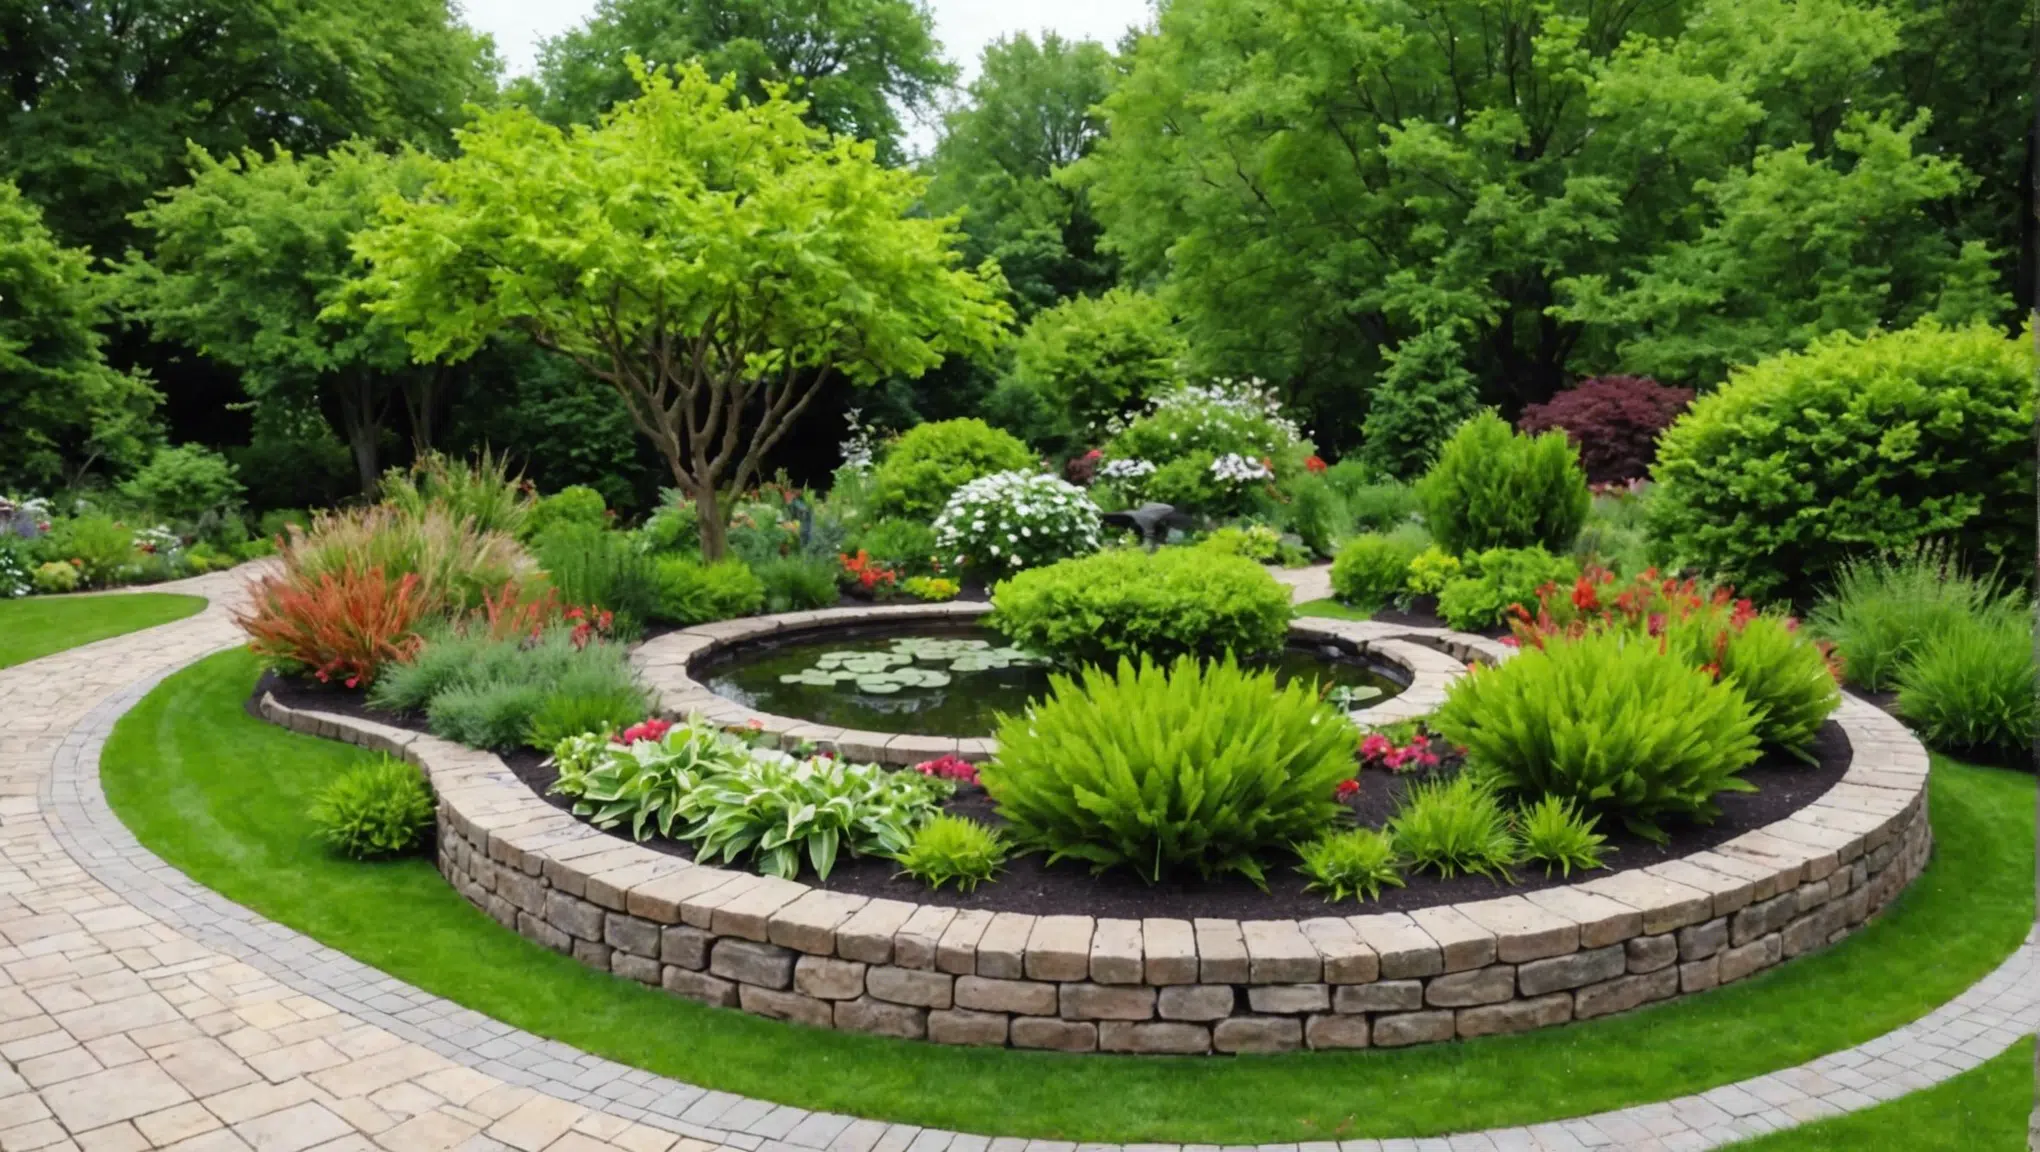 découvrez les 10 secrets incontournables pour transformer votre jardin en oasis de verdure et profiter pleinement de votre espace extérieur !